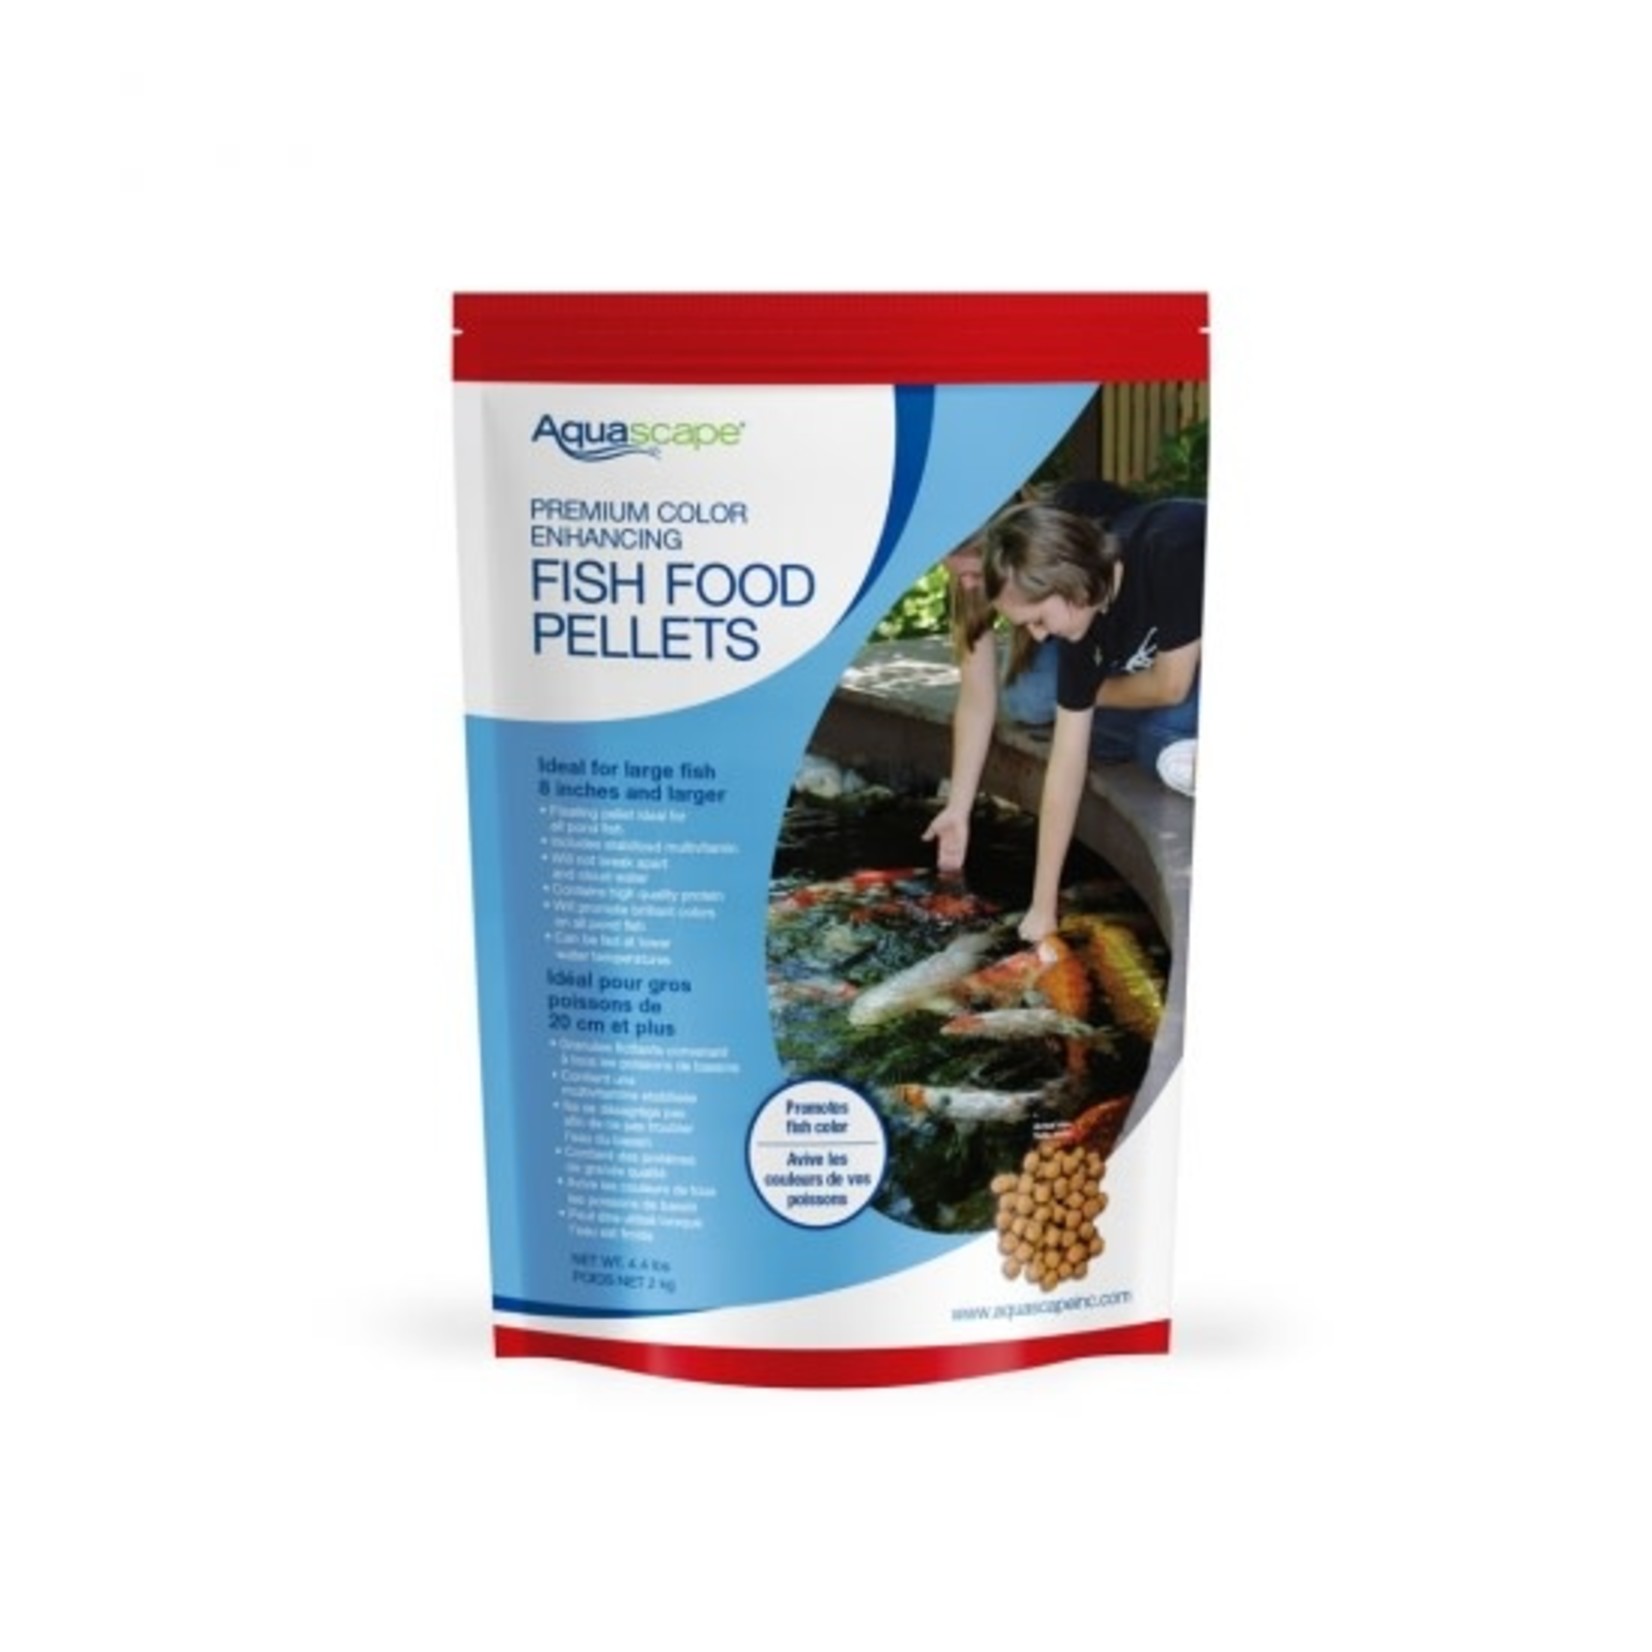 Aquascape Premium Color Enhancing Fish Food Pellets - Large Pellets - 4.4 lb